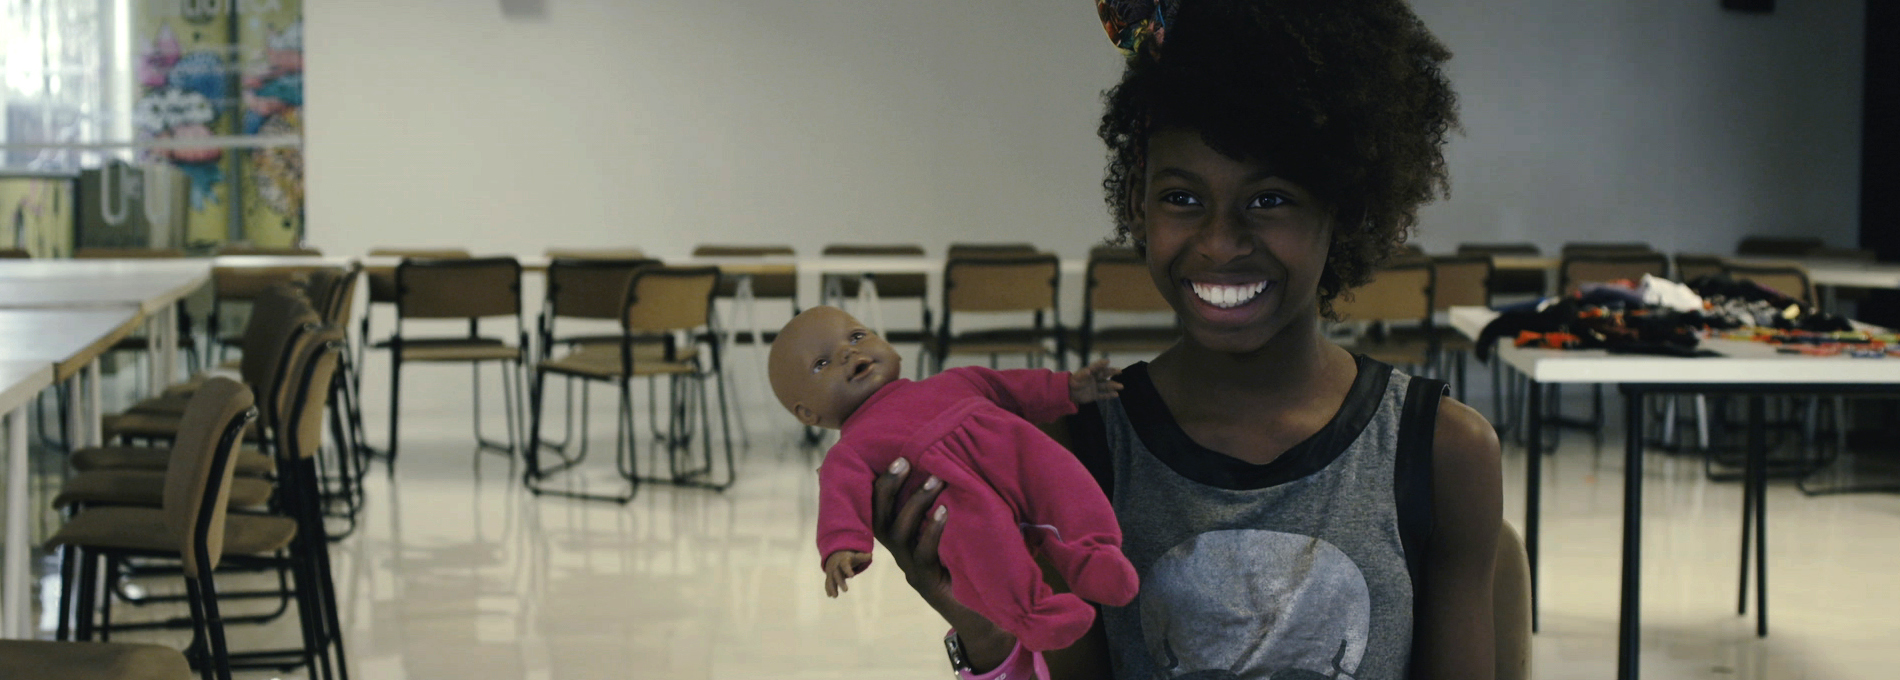 Capa do filme “Parece comigo” – Kelly Cristina Spinelli, foto de uma menina negra em sala de aula segurando uma boneca